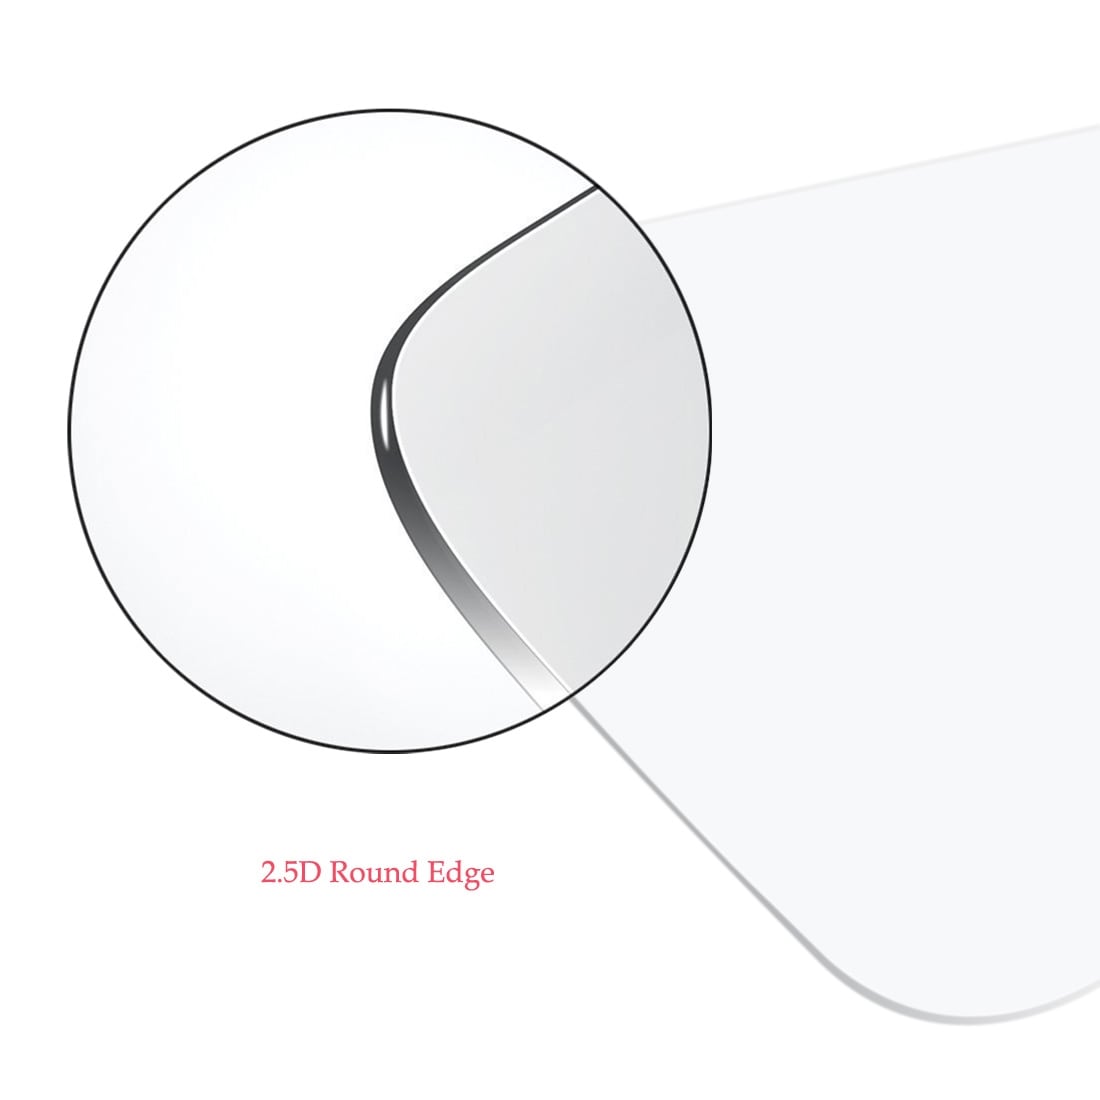 Skjermbeskyttelse herdet glass iPhone 8 Plus / 7 Plus - For- & bakside